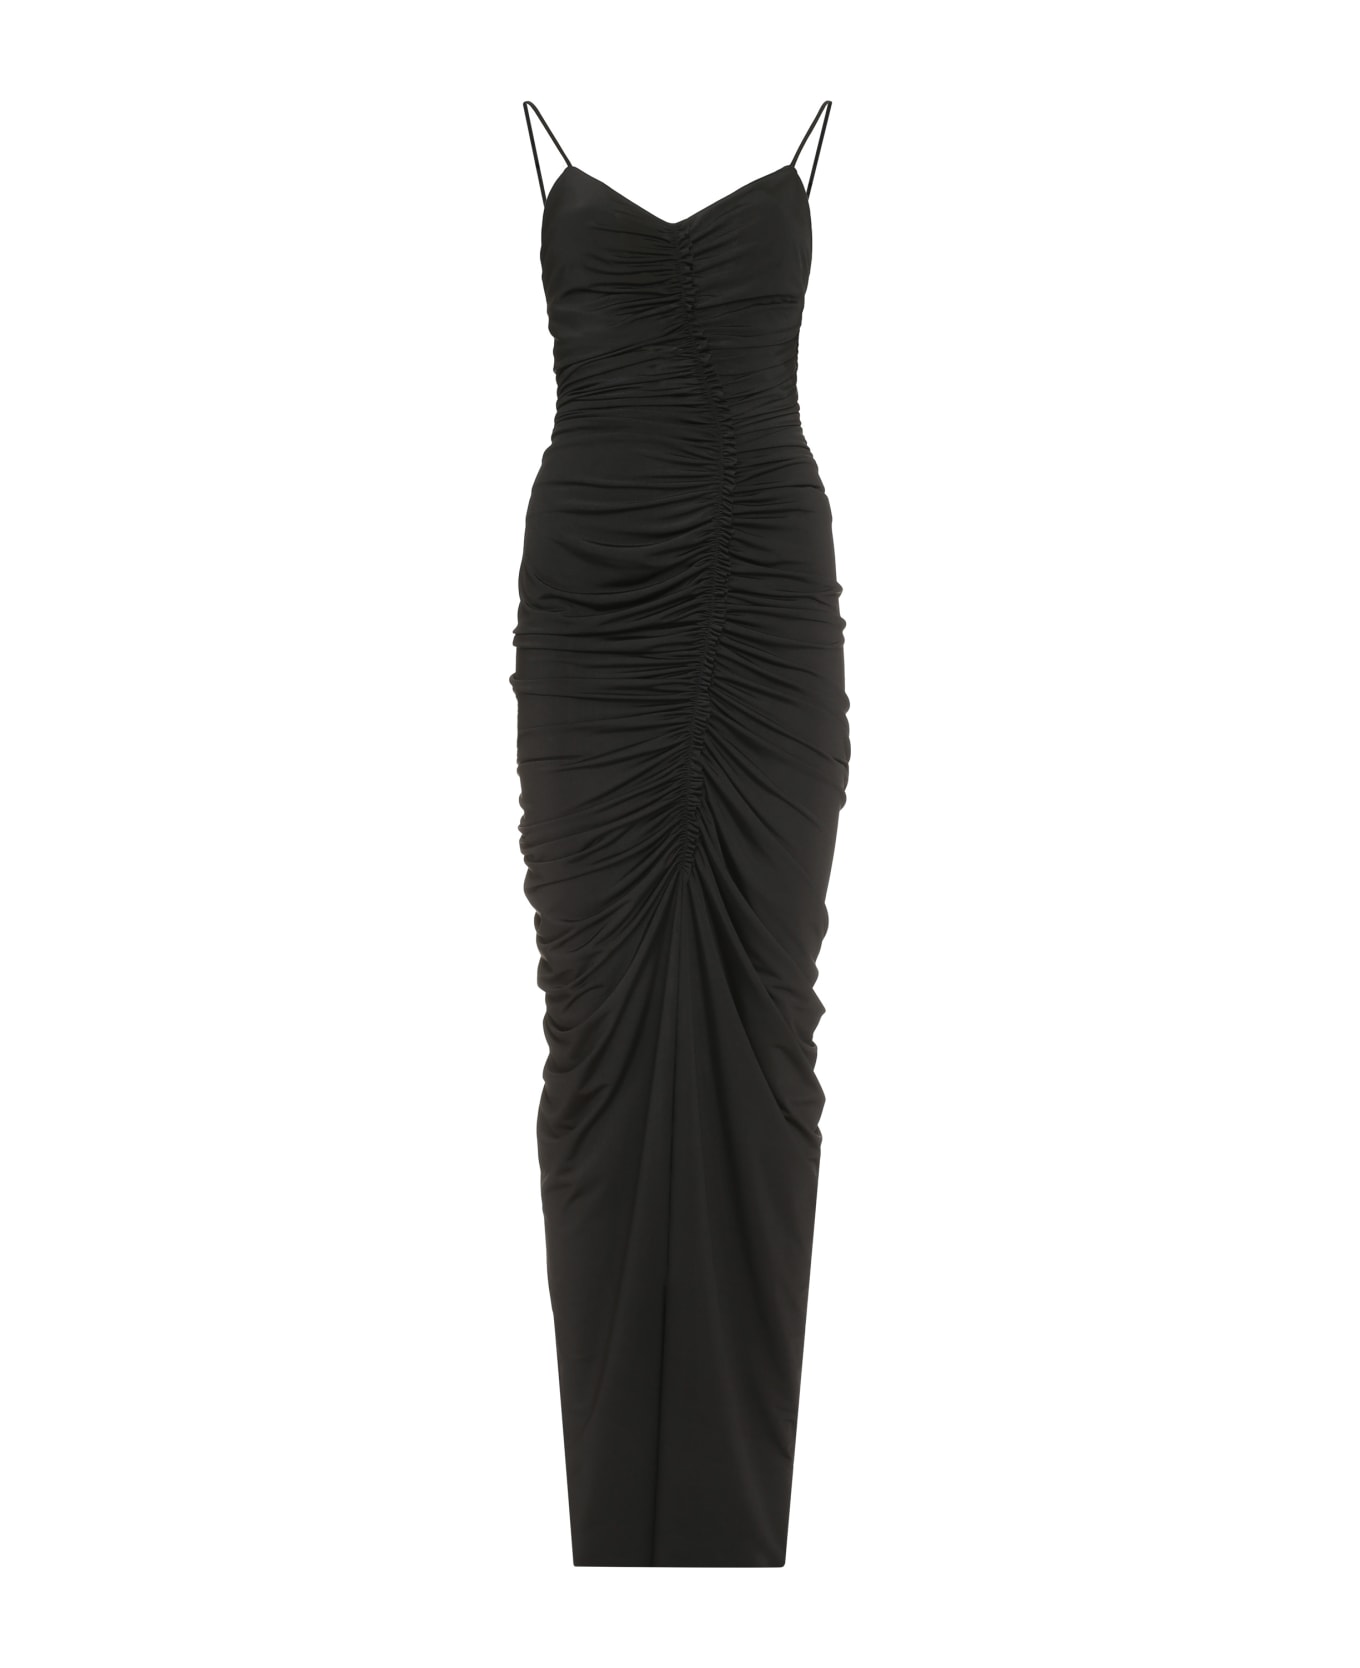 Victoria Beckham Jersey Dress - Nero